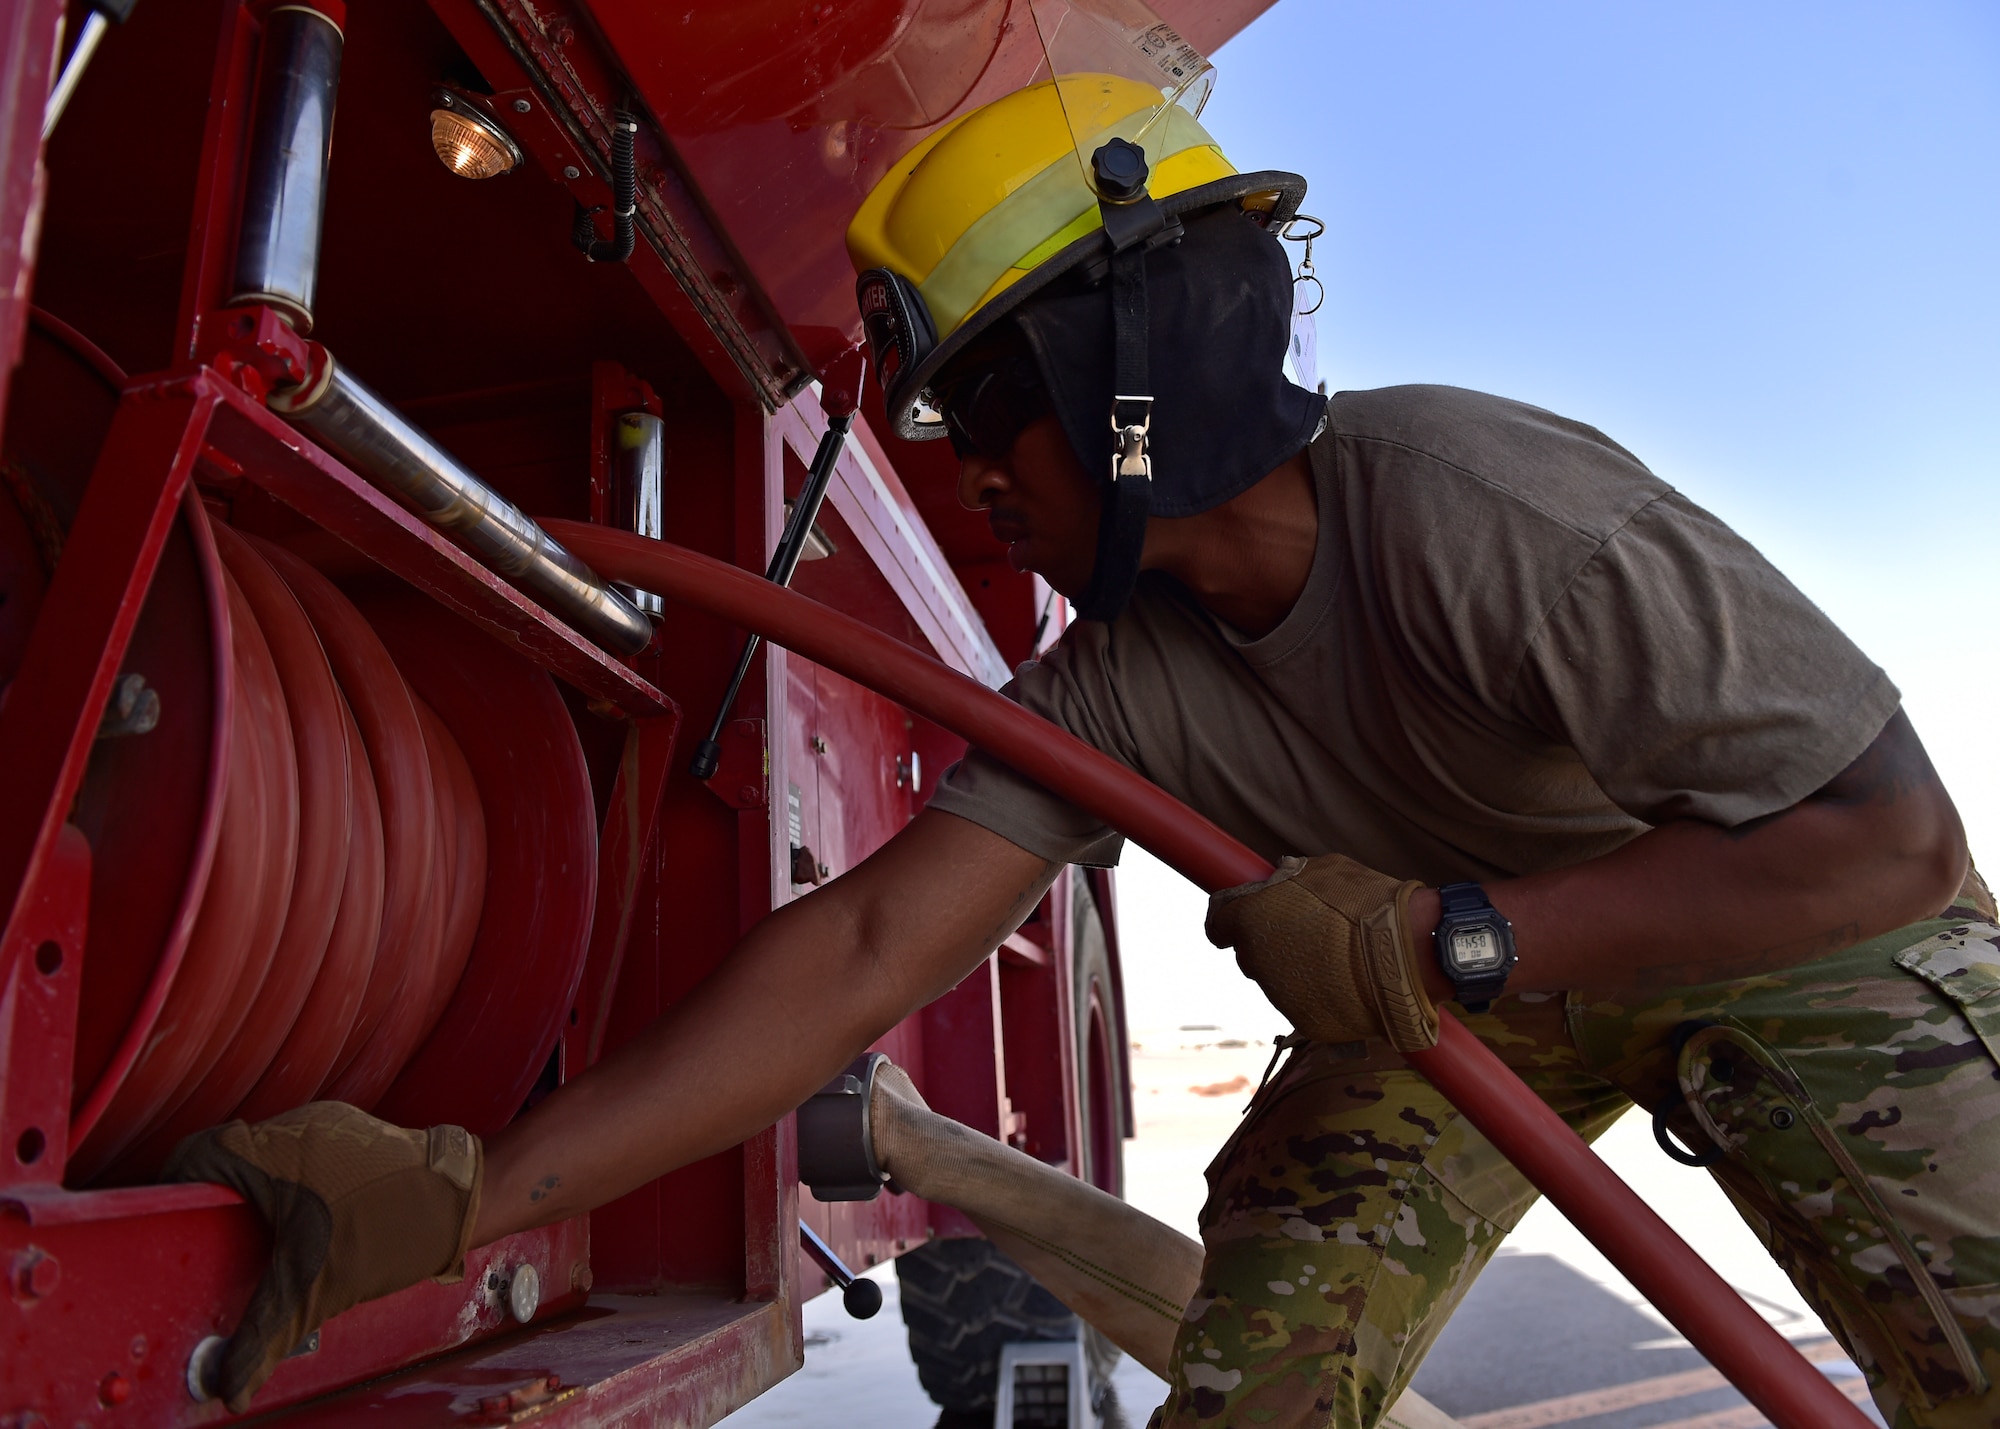 378 ECES fire department improve skills through training